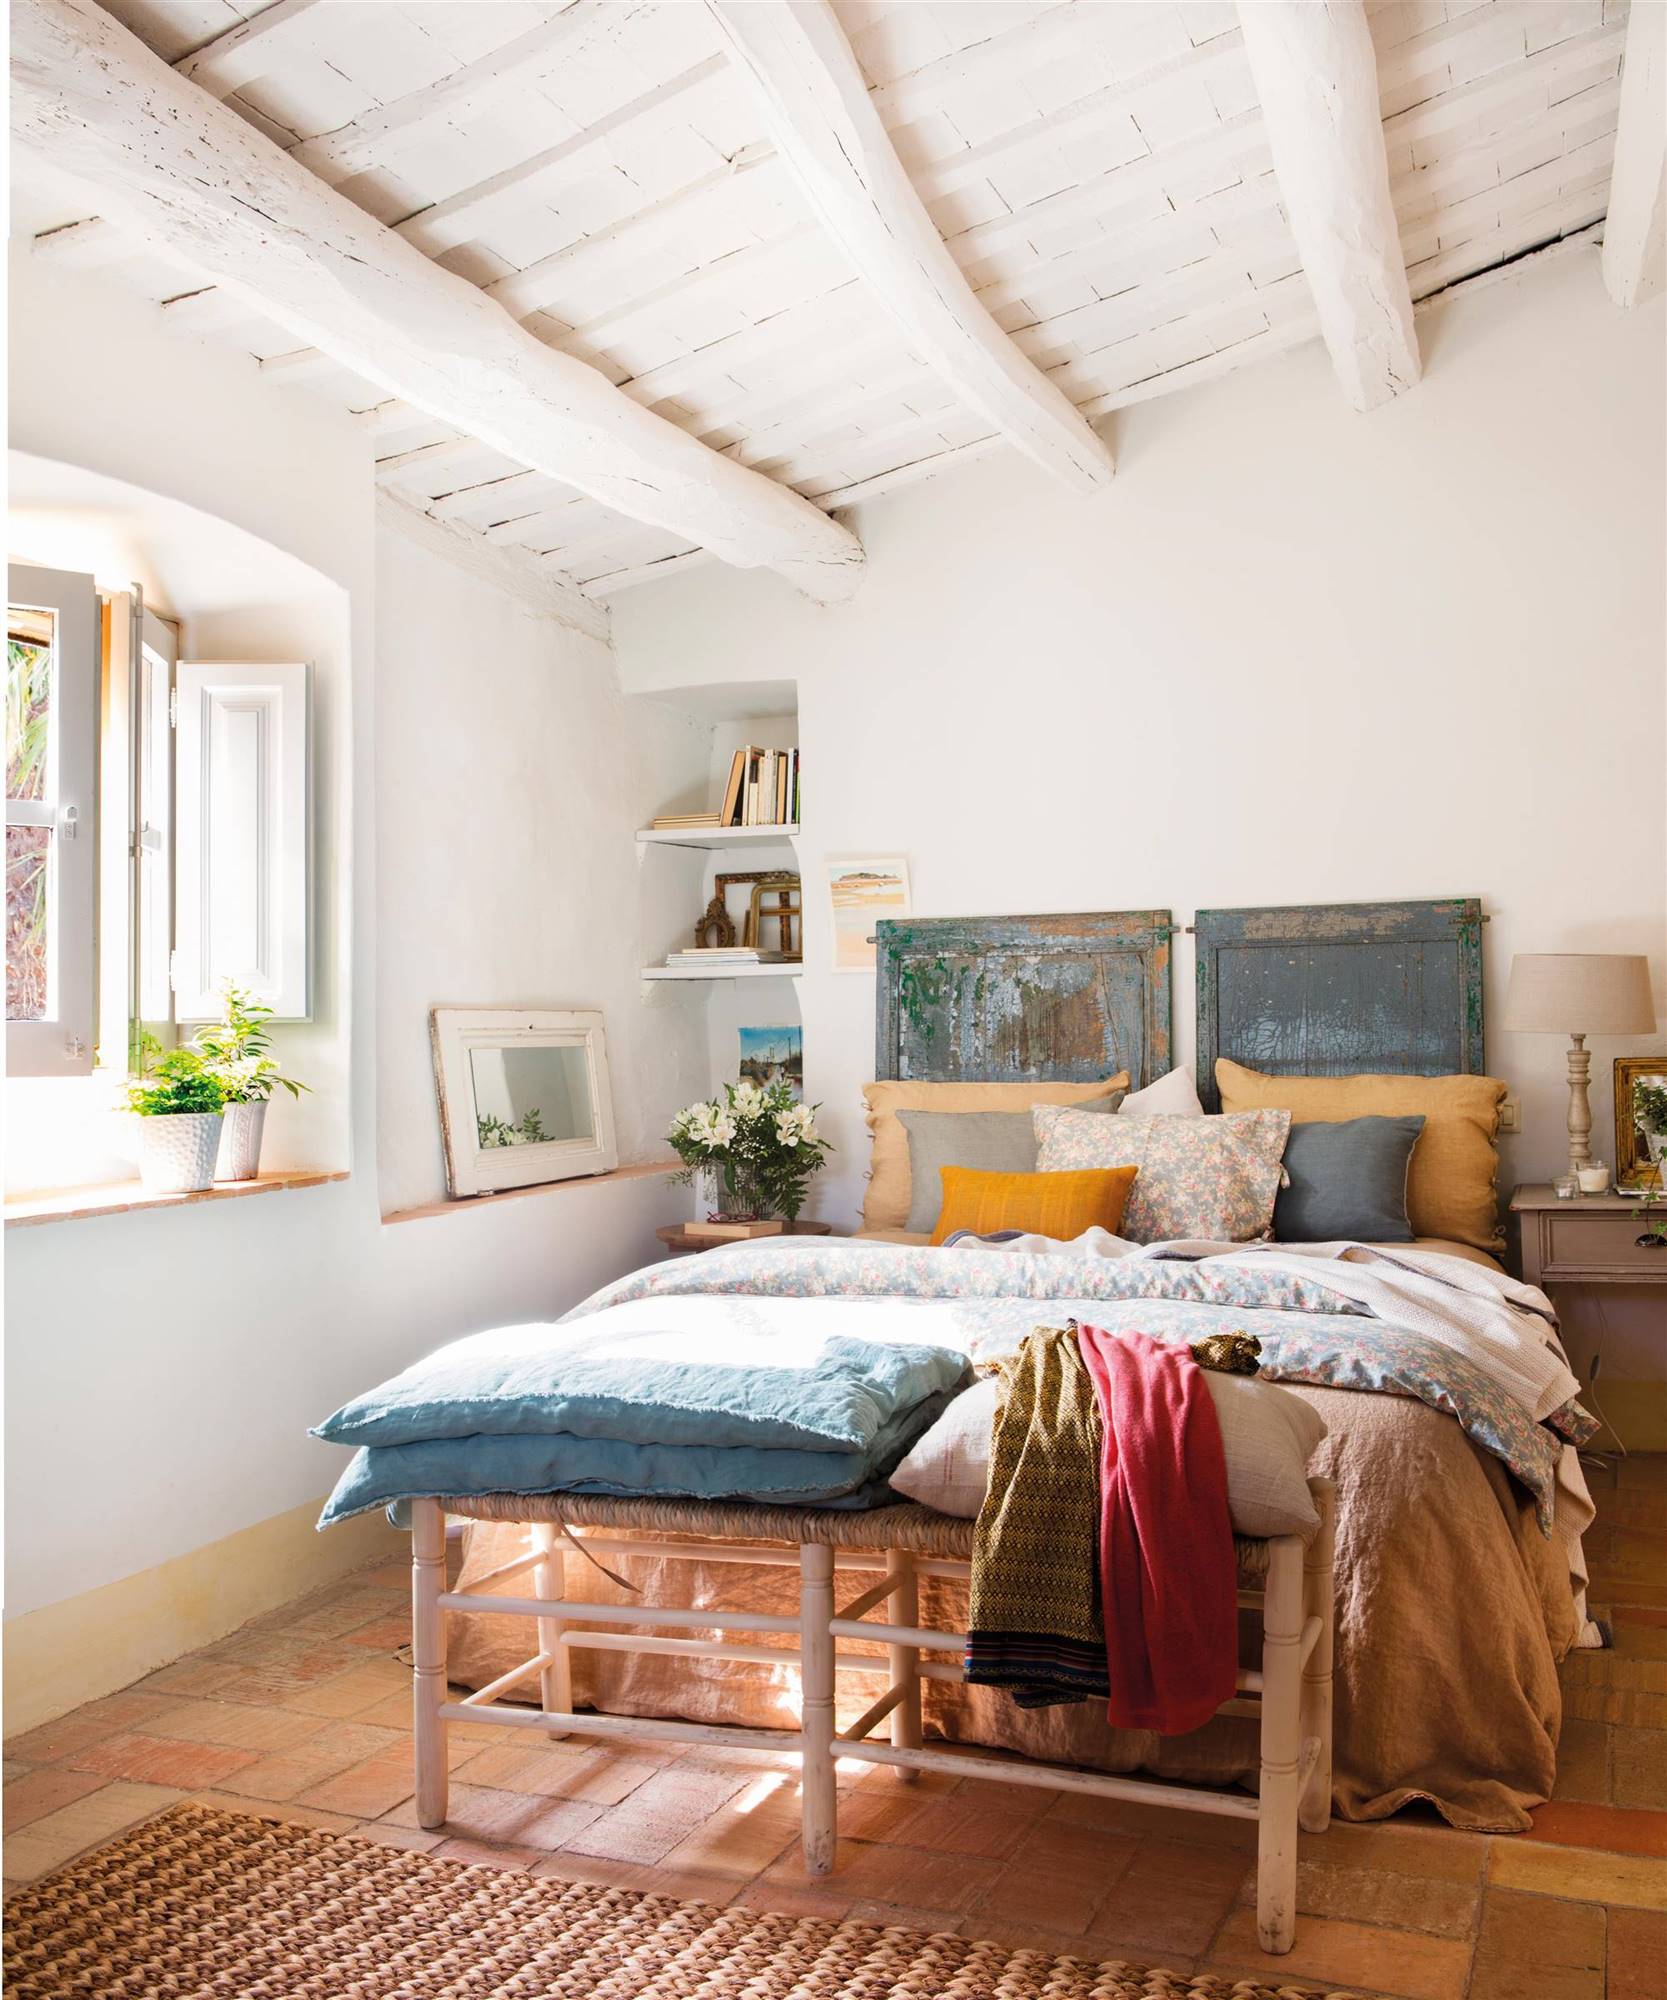 Dormitorio con banqueta, vigas en el techo y cabecero original recuperado con pintura a al tiza.